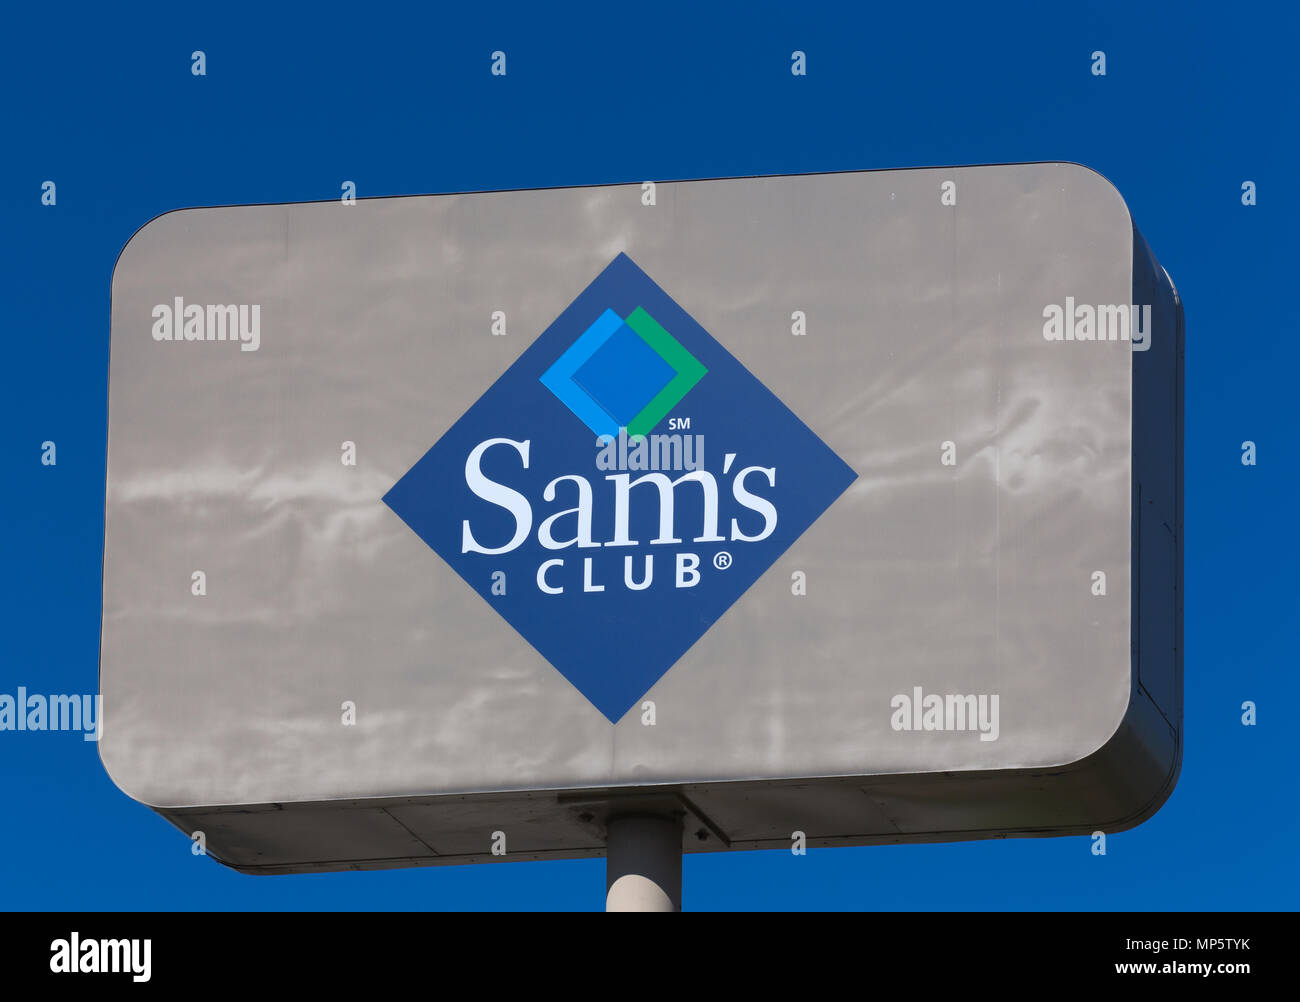 BLOOMINGTON, MN/USA - 21. JUNI 2014: Sam's Club äußeres Zeichen. Sam's Club ist eine amerikanische Kette der Mitgliedschaft - nur Retail Warehouse Clubs. Stockfoto